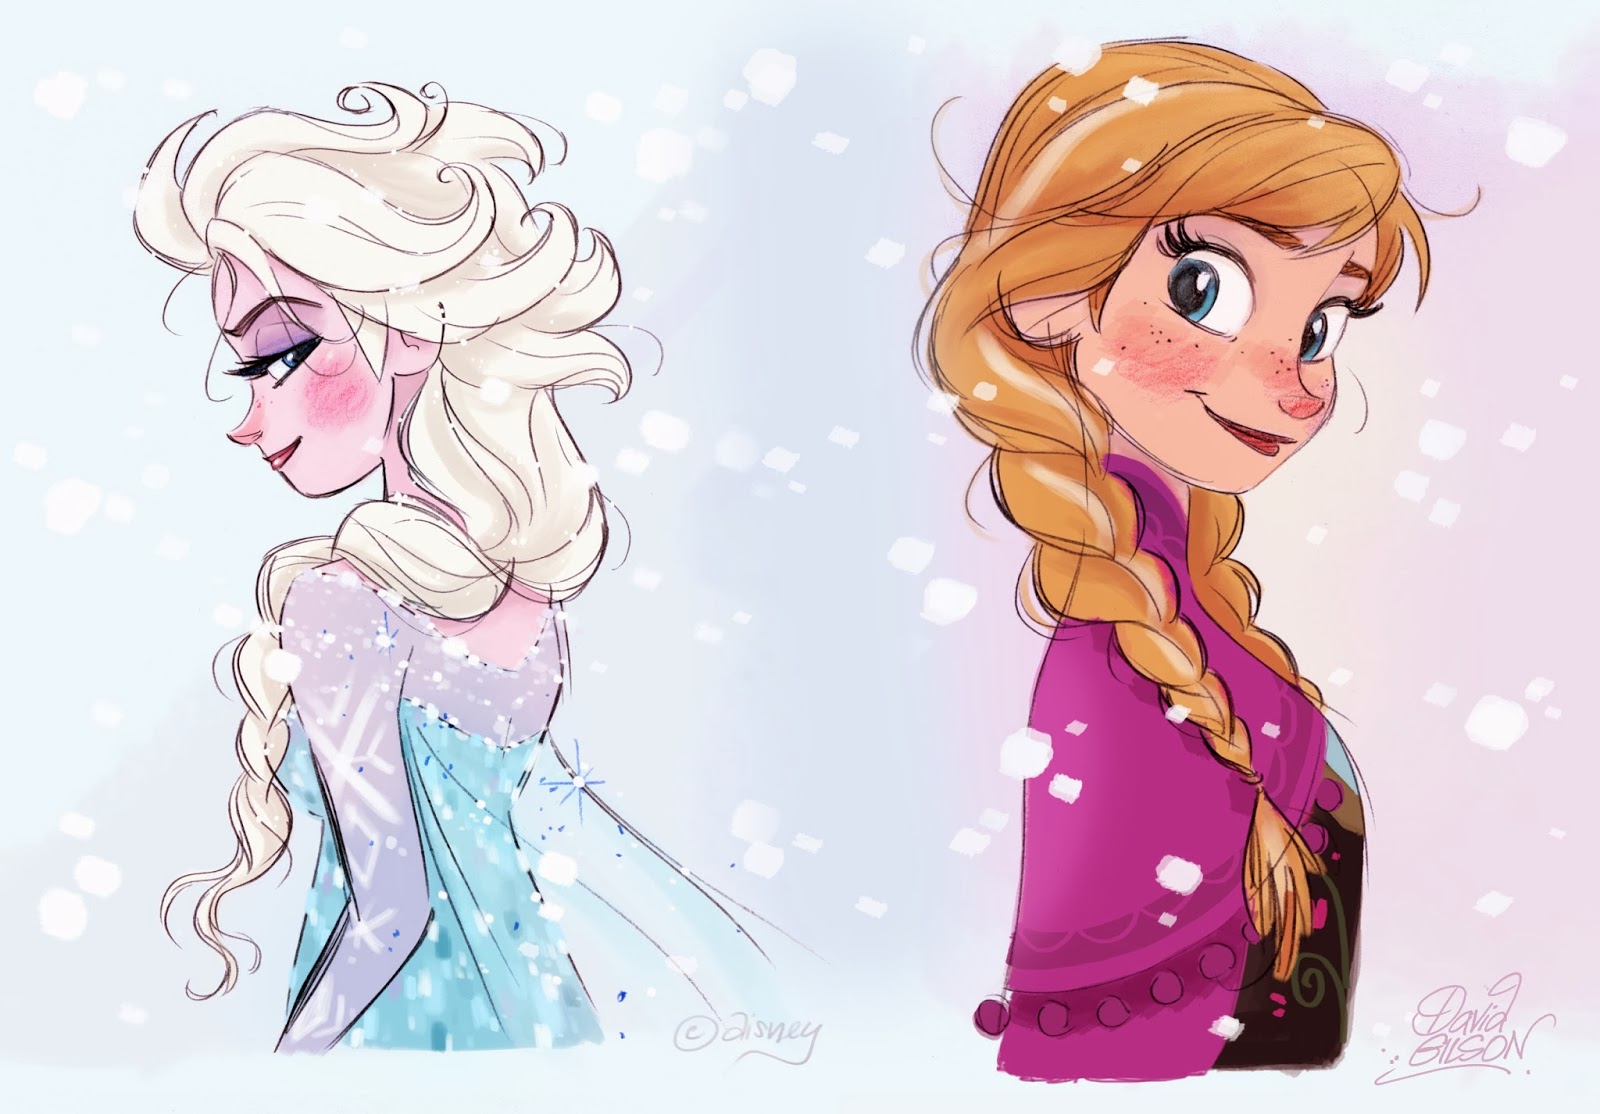 LA REINE DES NEIGES : Photos réalistes d'Elsa et Anna